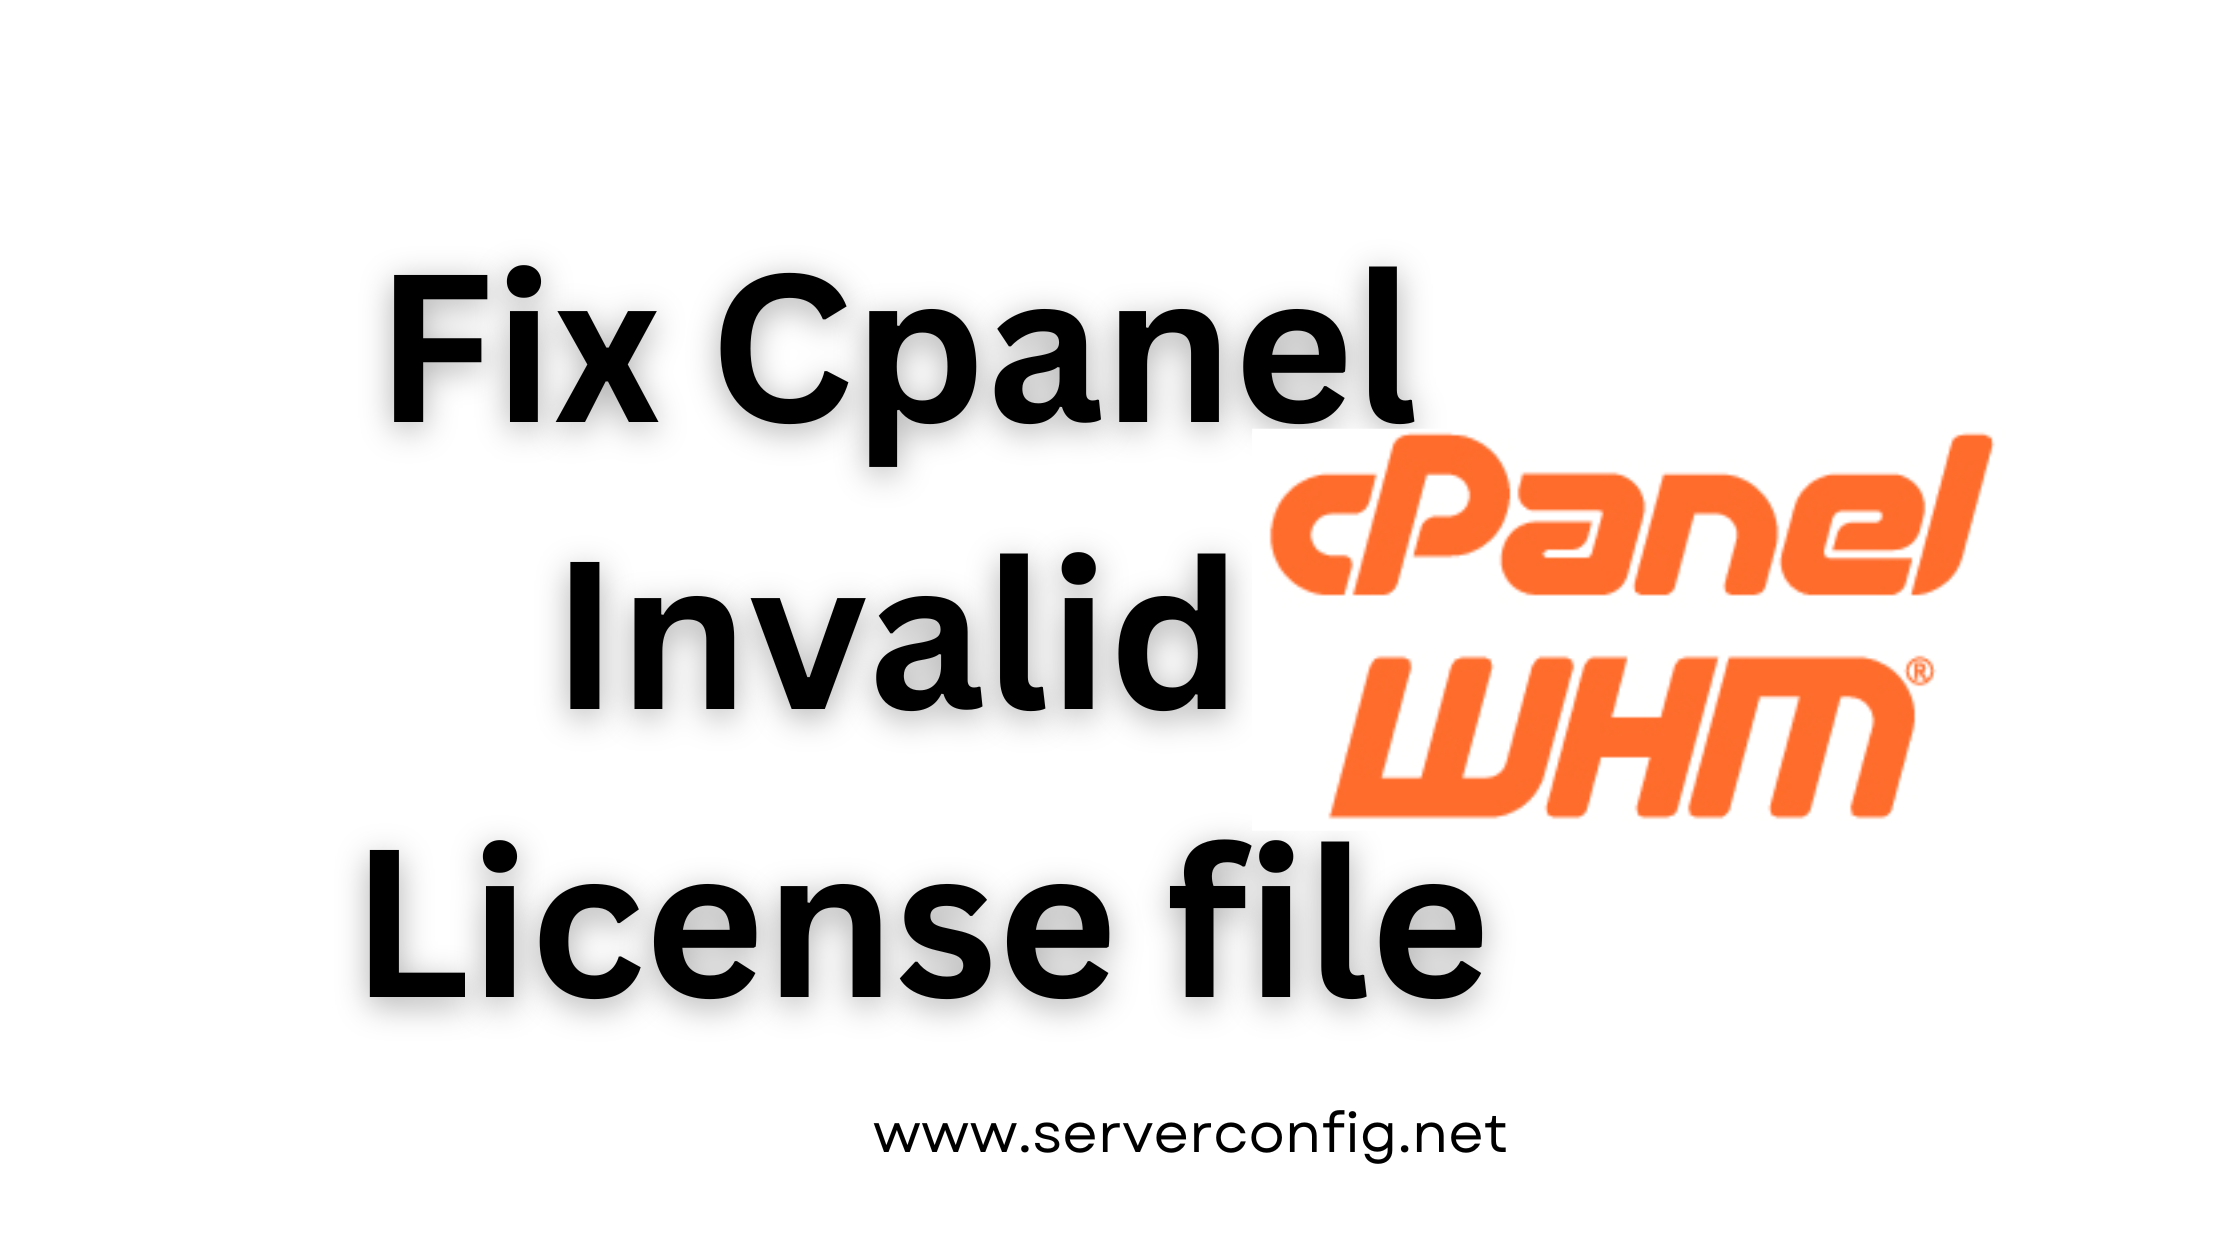 Fix cPanel Invalid License File